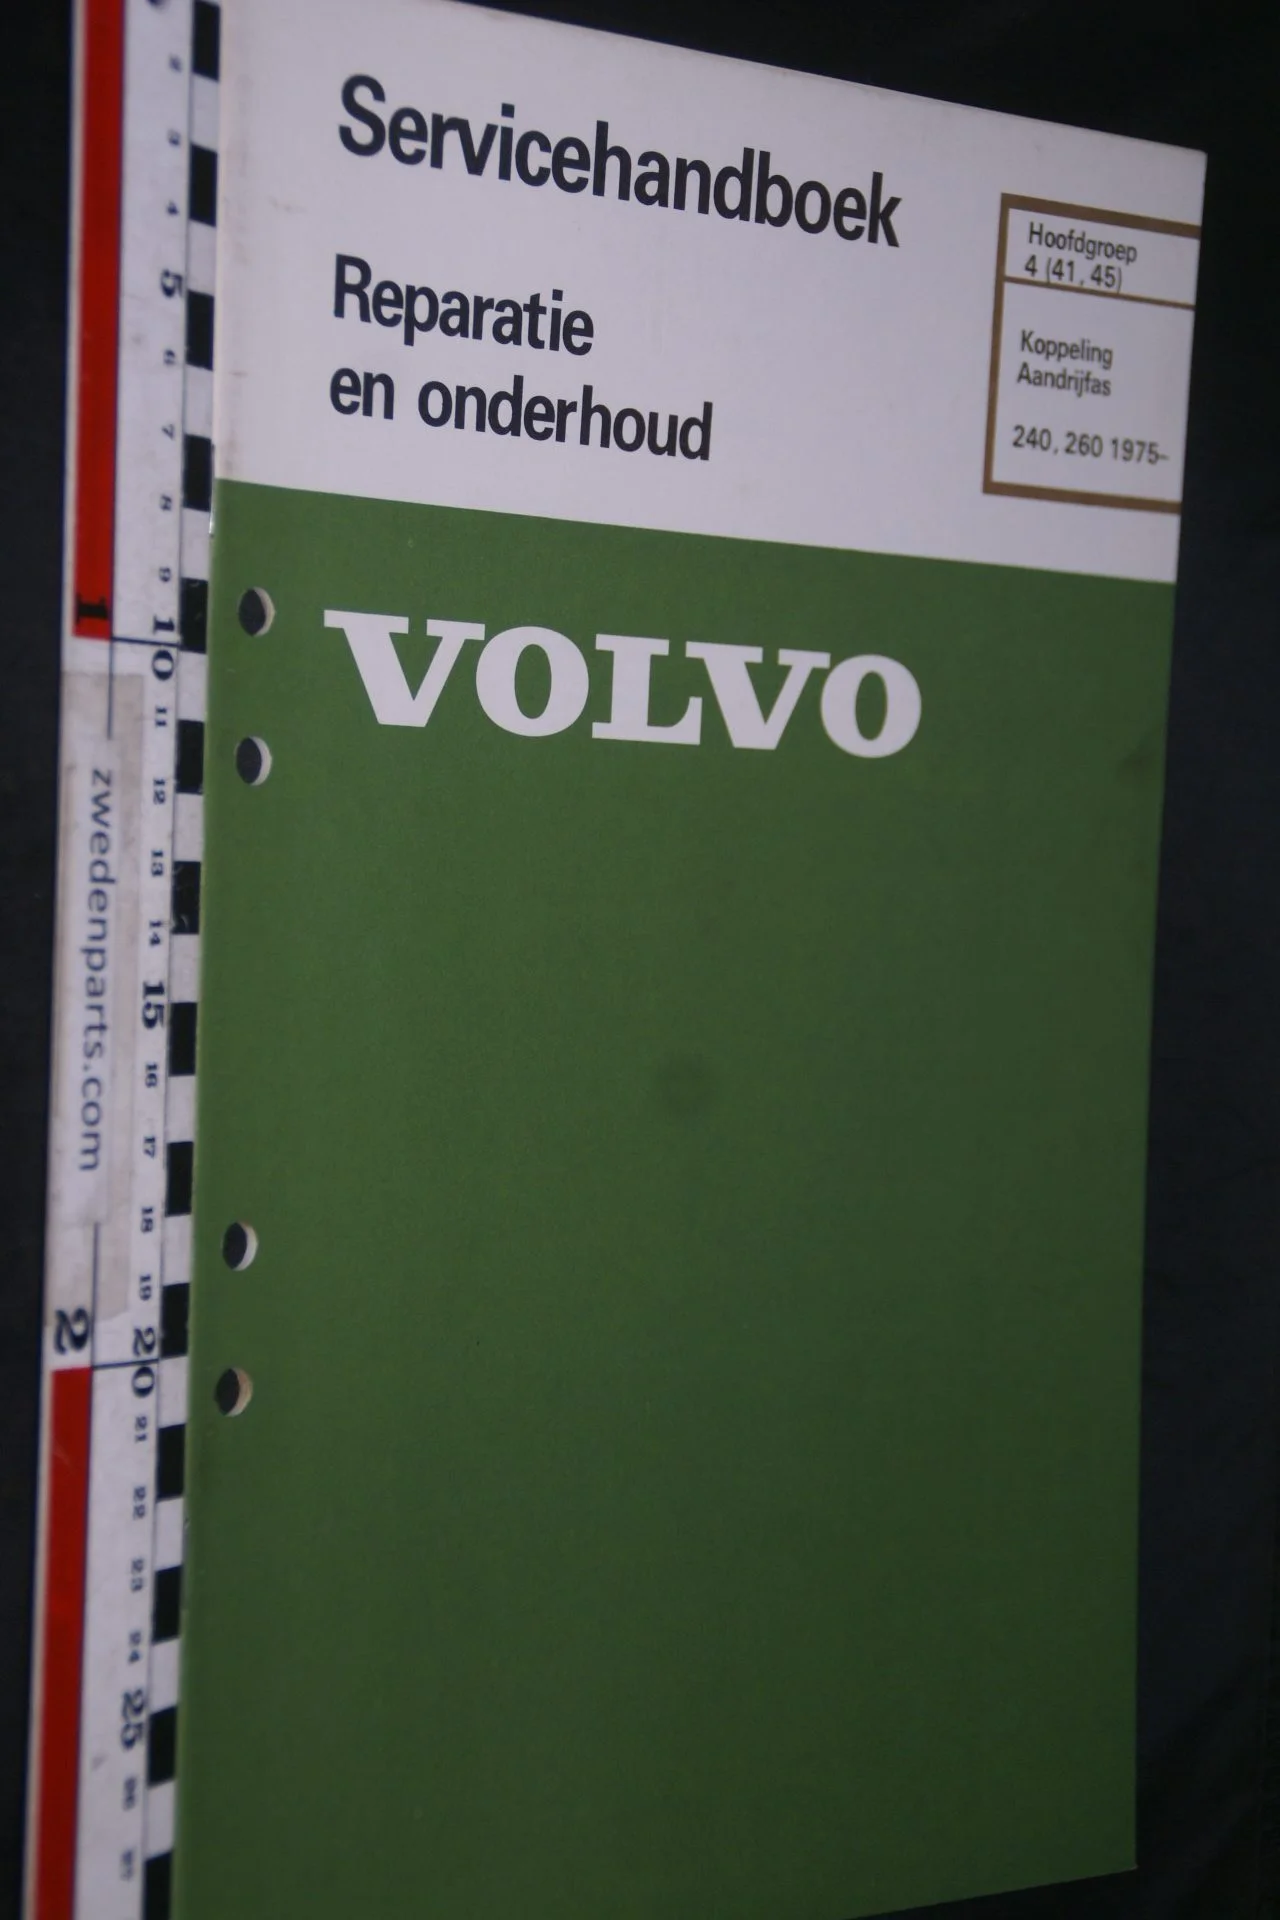 DSC06746 1982 origineel Volvo 240, 260 servicehandboek 4 (41,45) koppeling, aandrijfas 1 van 800 TP 30444-1